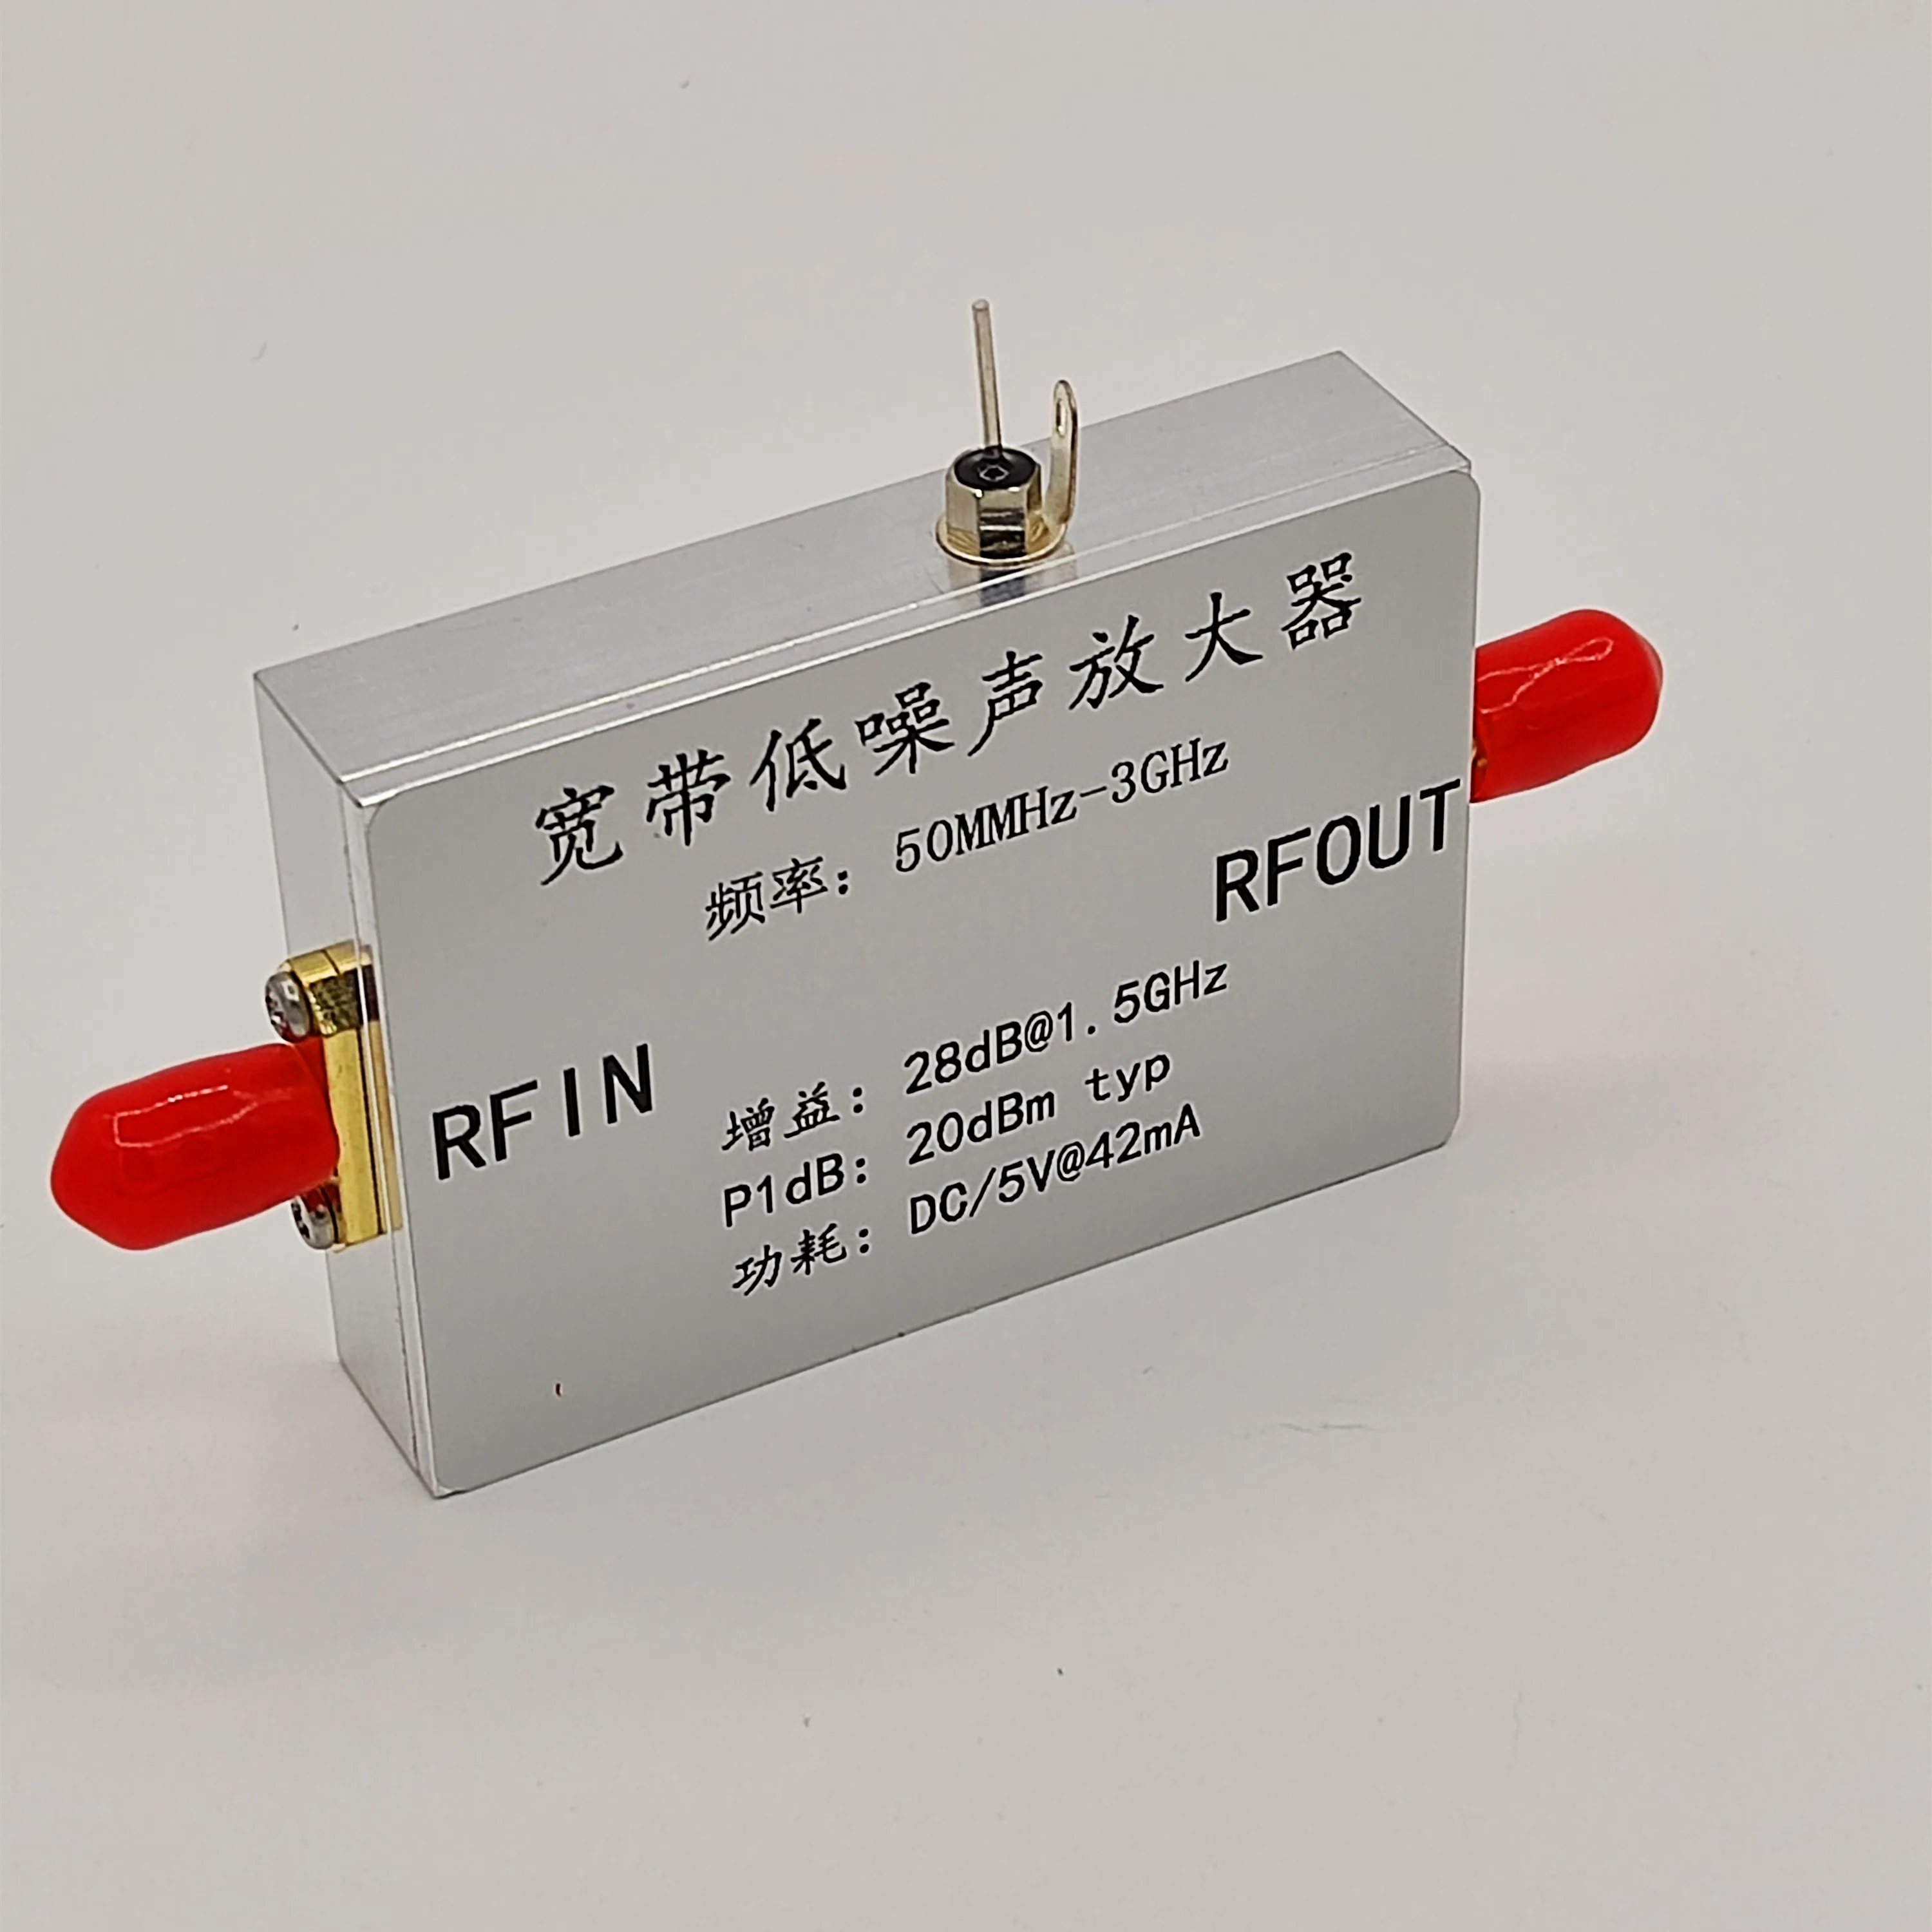 

Broadband Low Noise Amplifier RF Signal Enhancement Antenna Gain Compensation Noise Figure Low Power Consumption